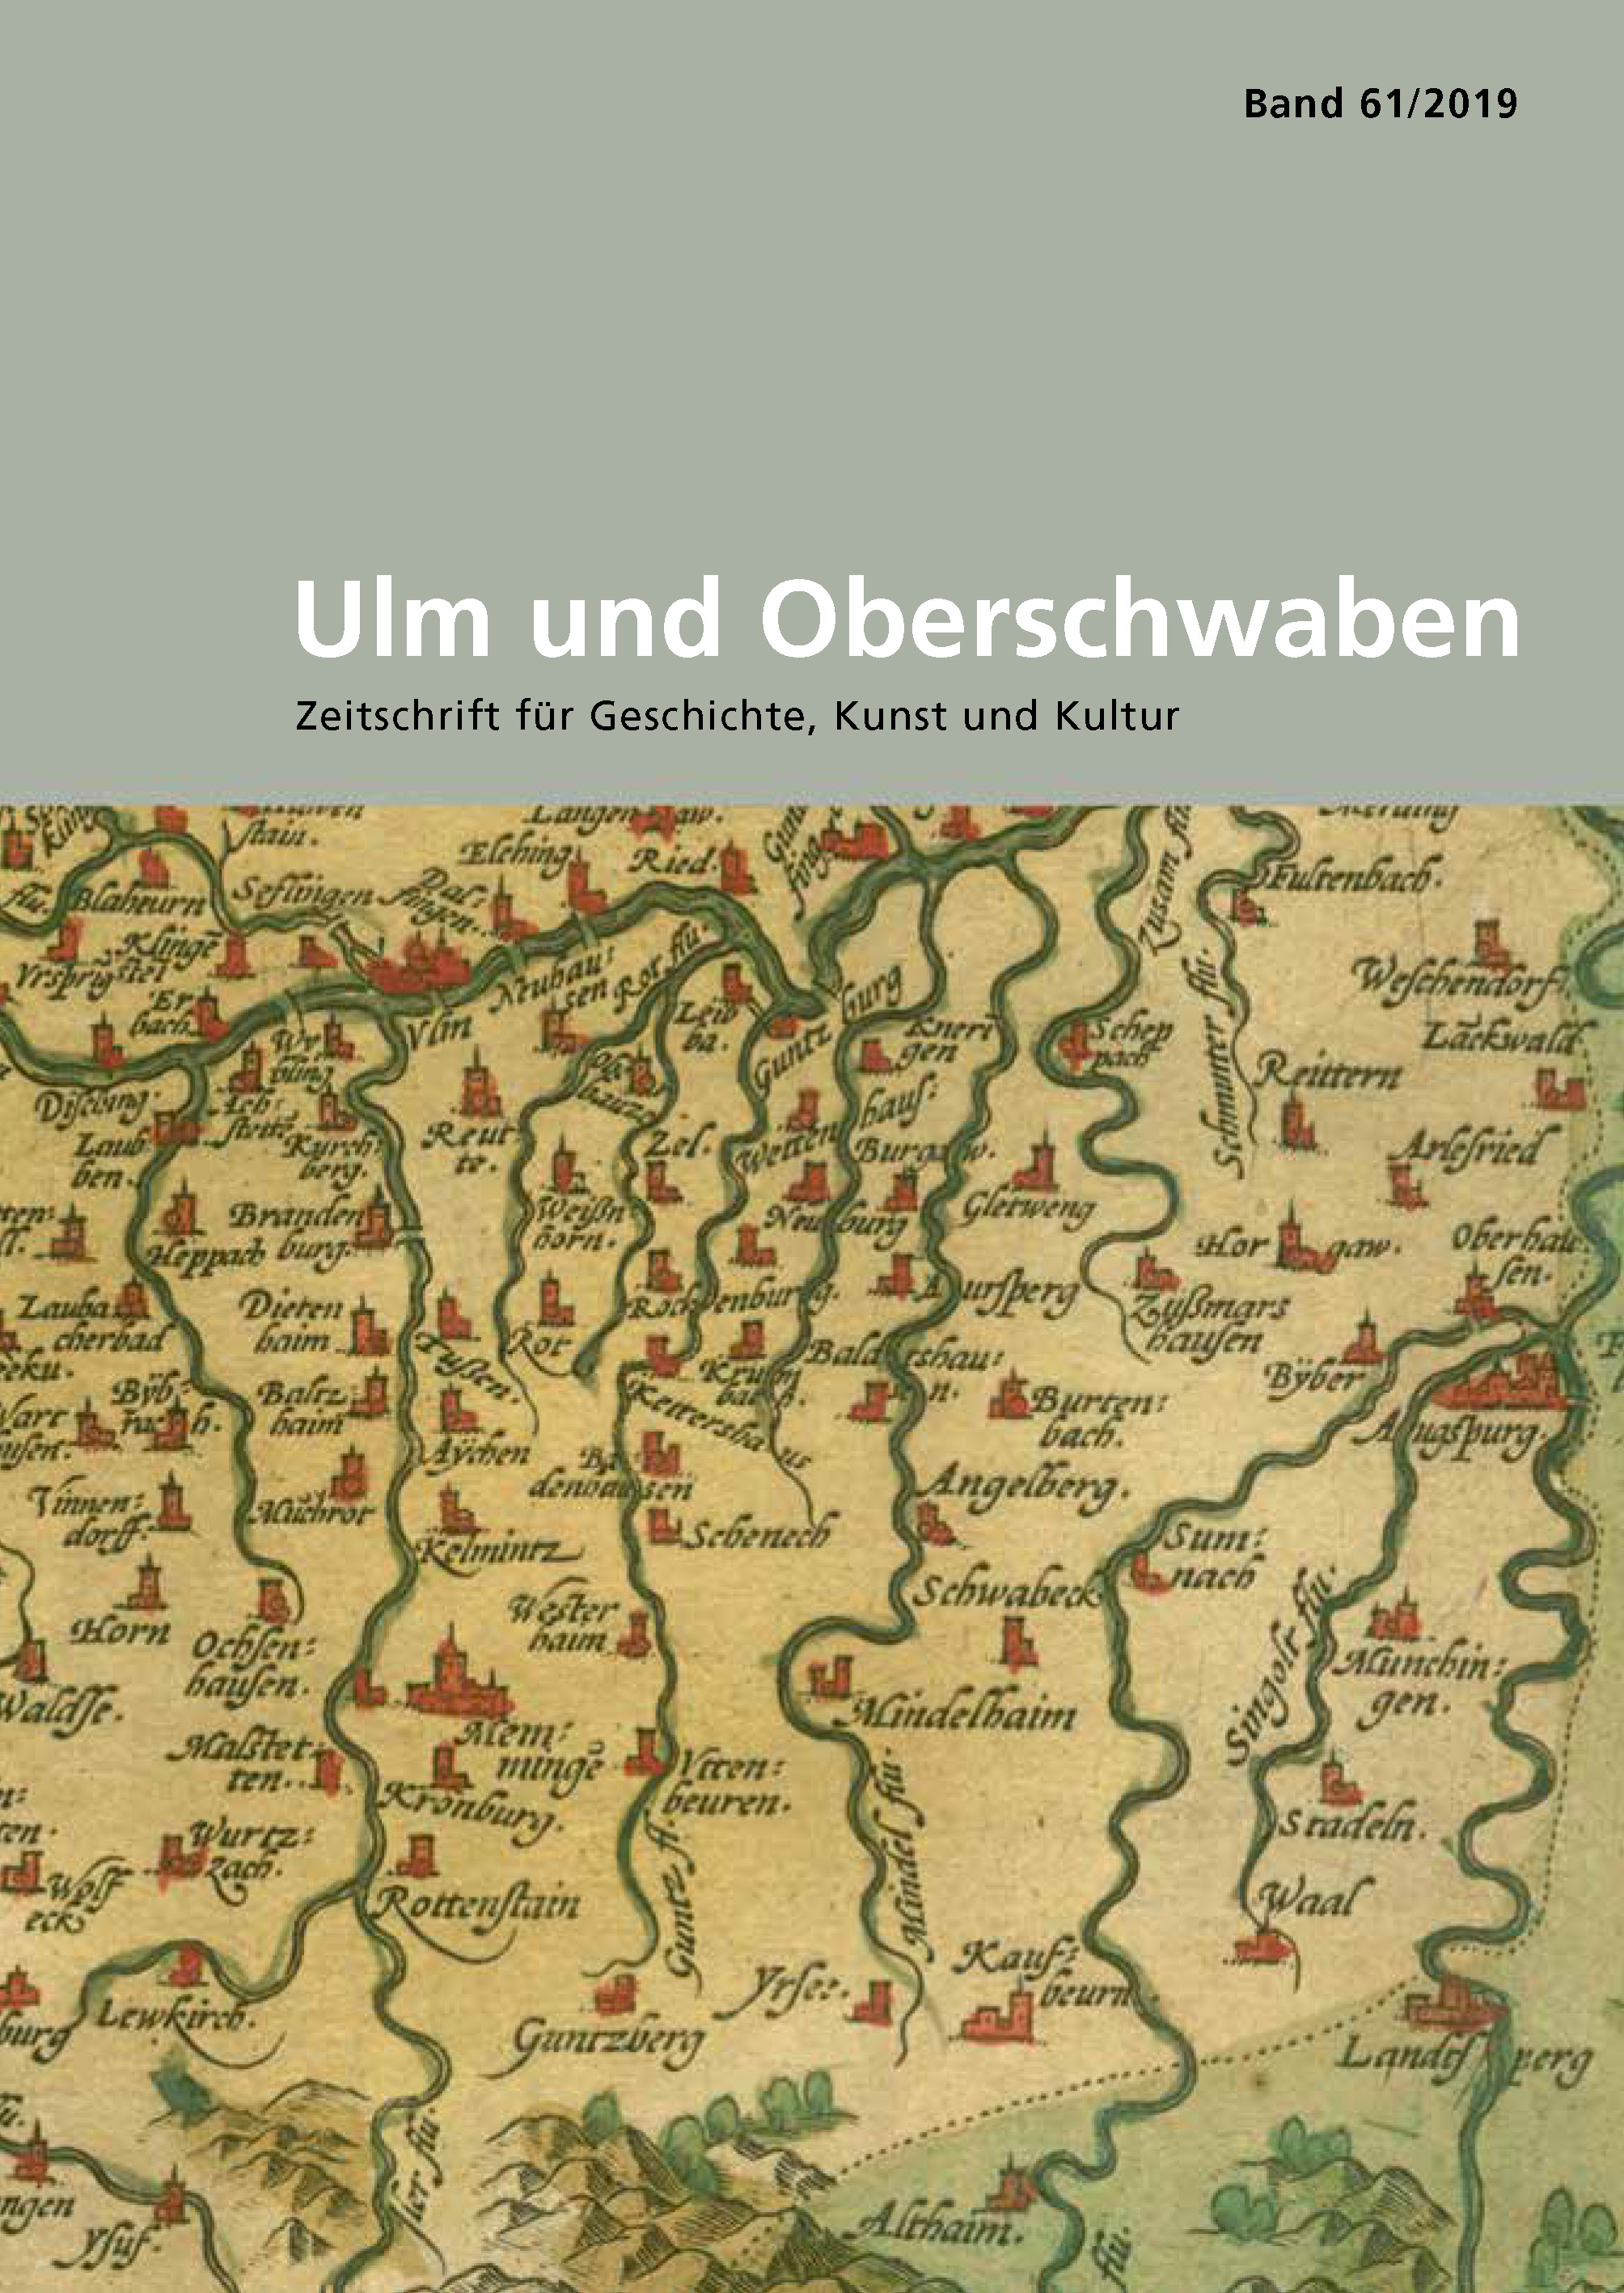                     Ansehen Bd. 61 (2019): Ulm und Oberschwaben
                